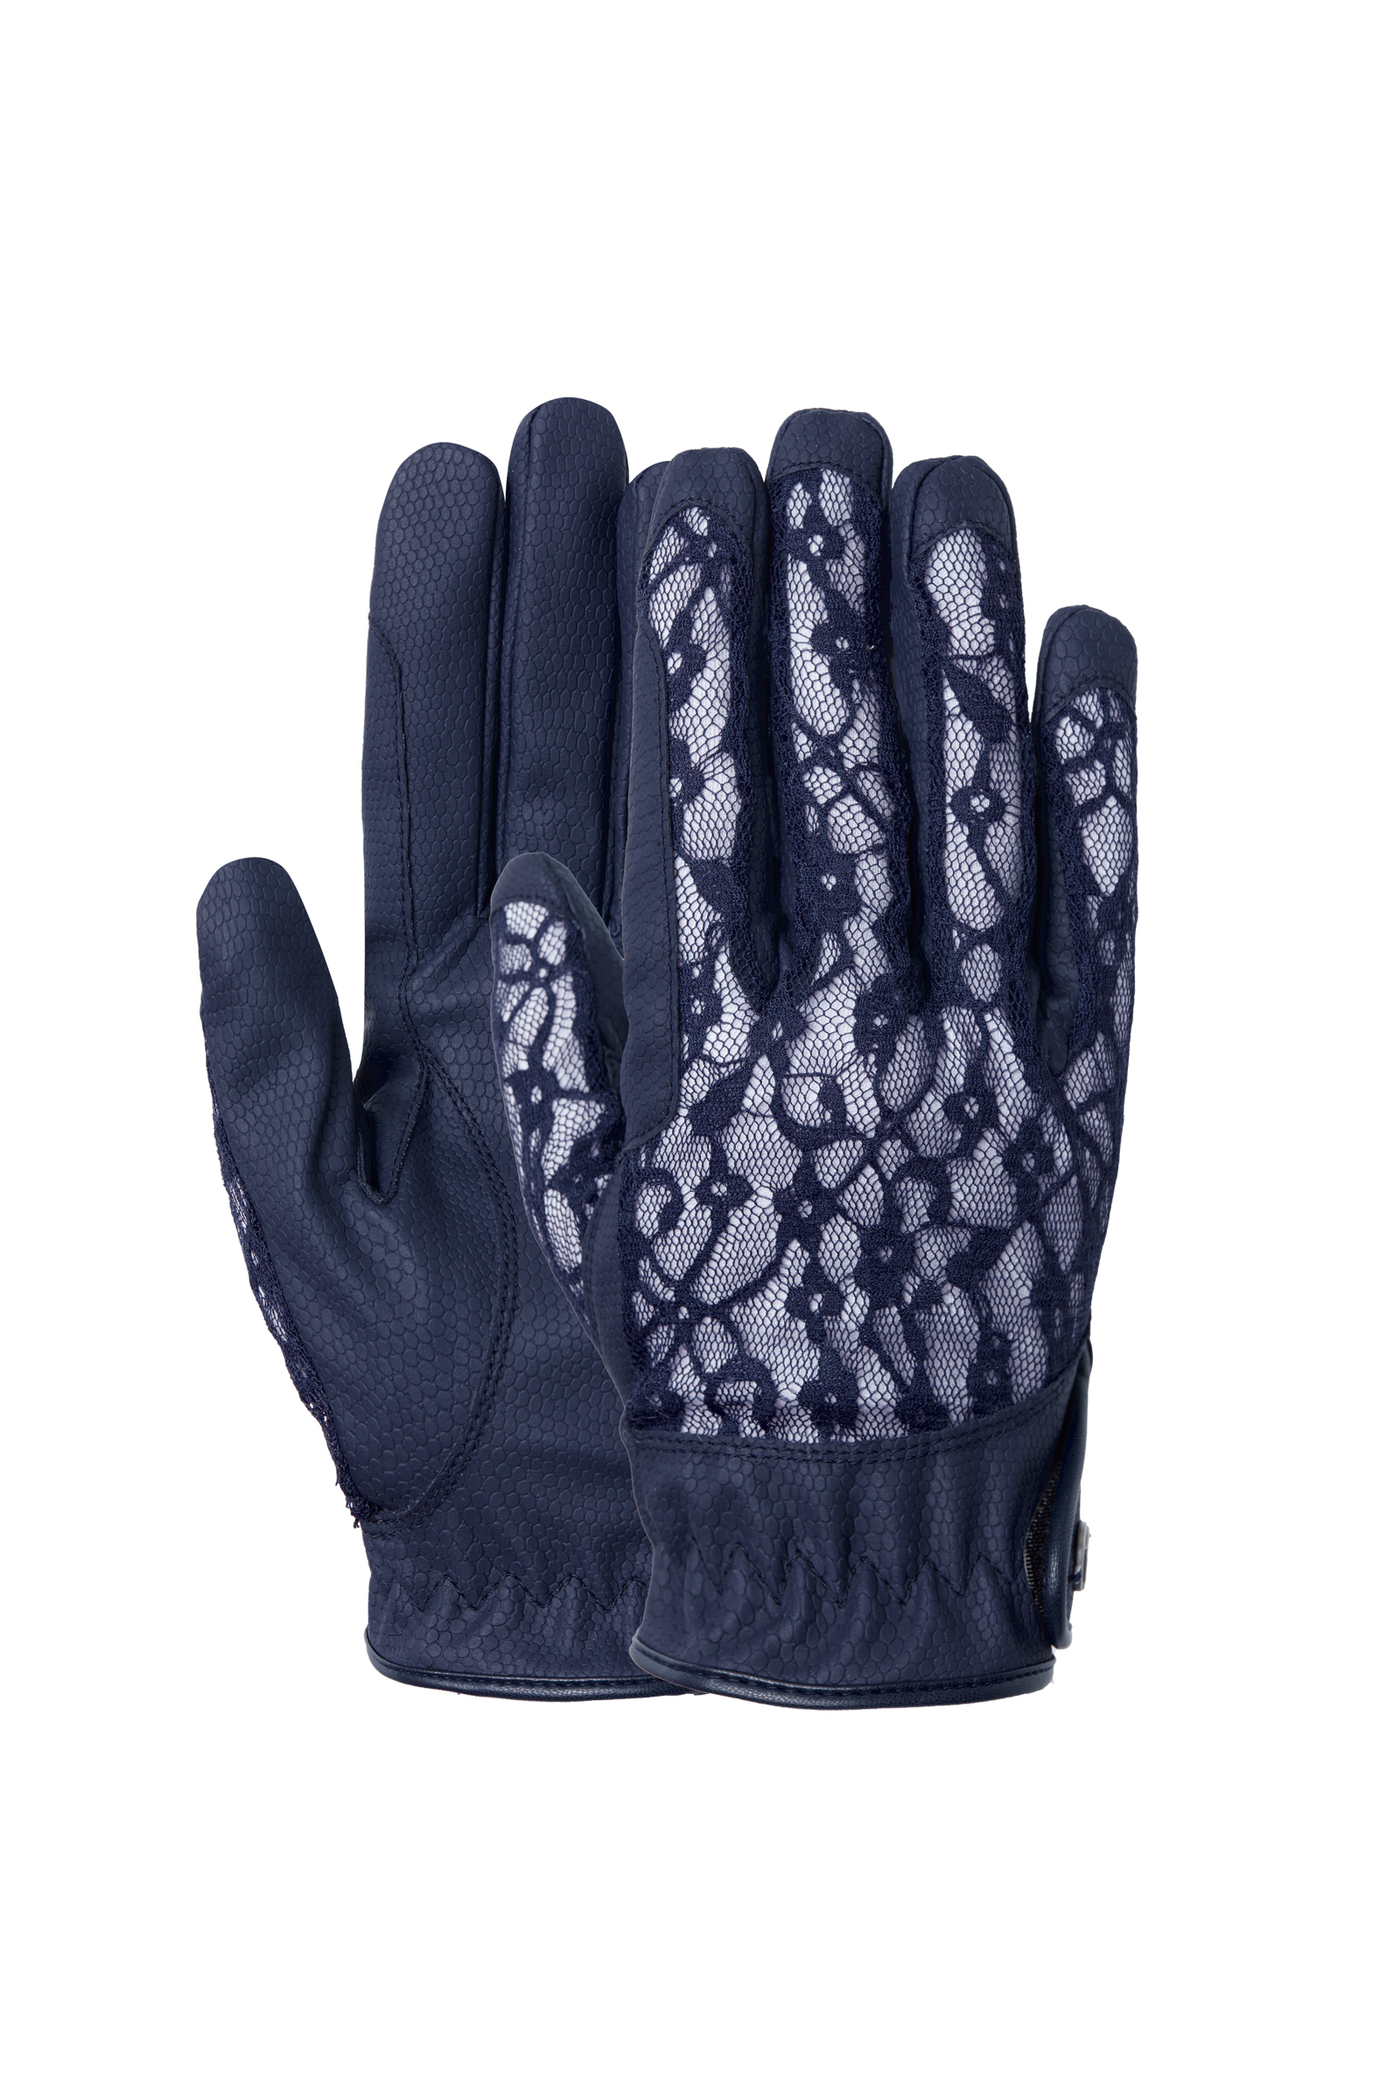 Buy B Vertigo Laia Women's Riding Gloves with Logo Print